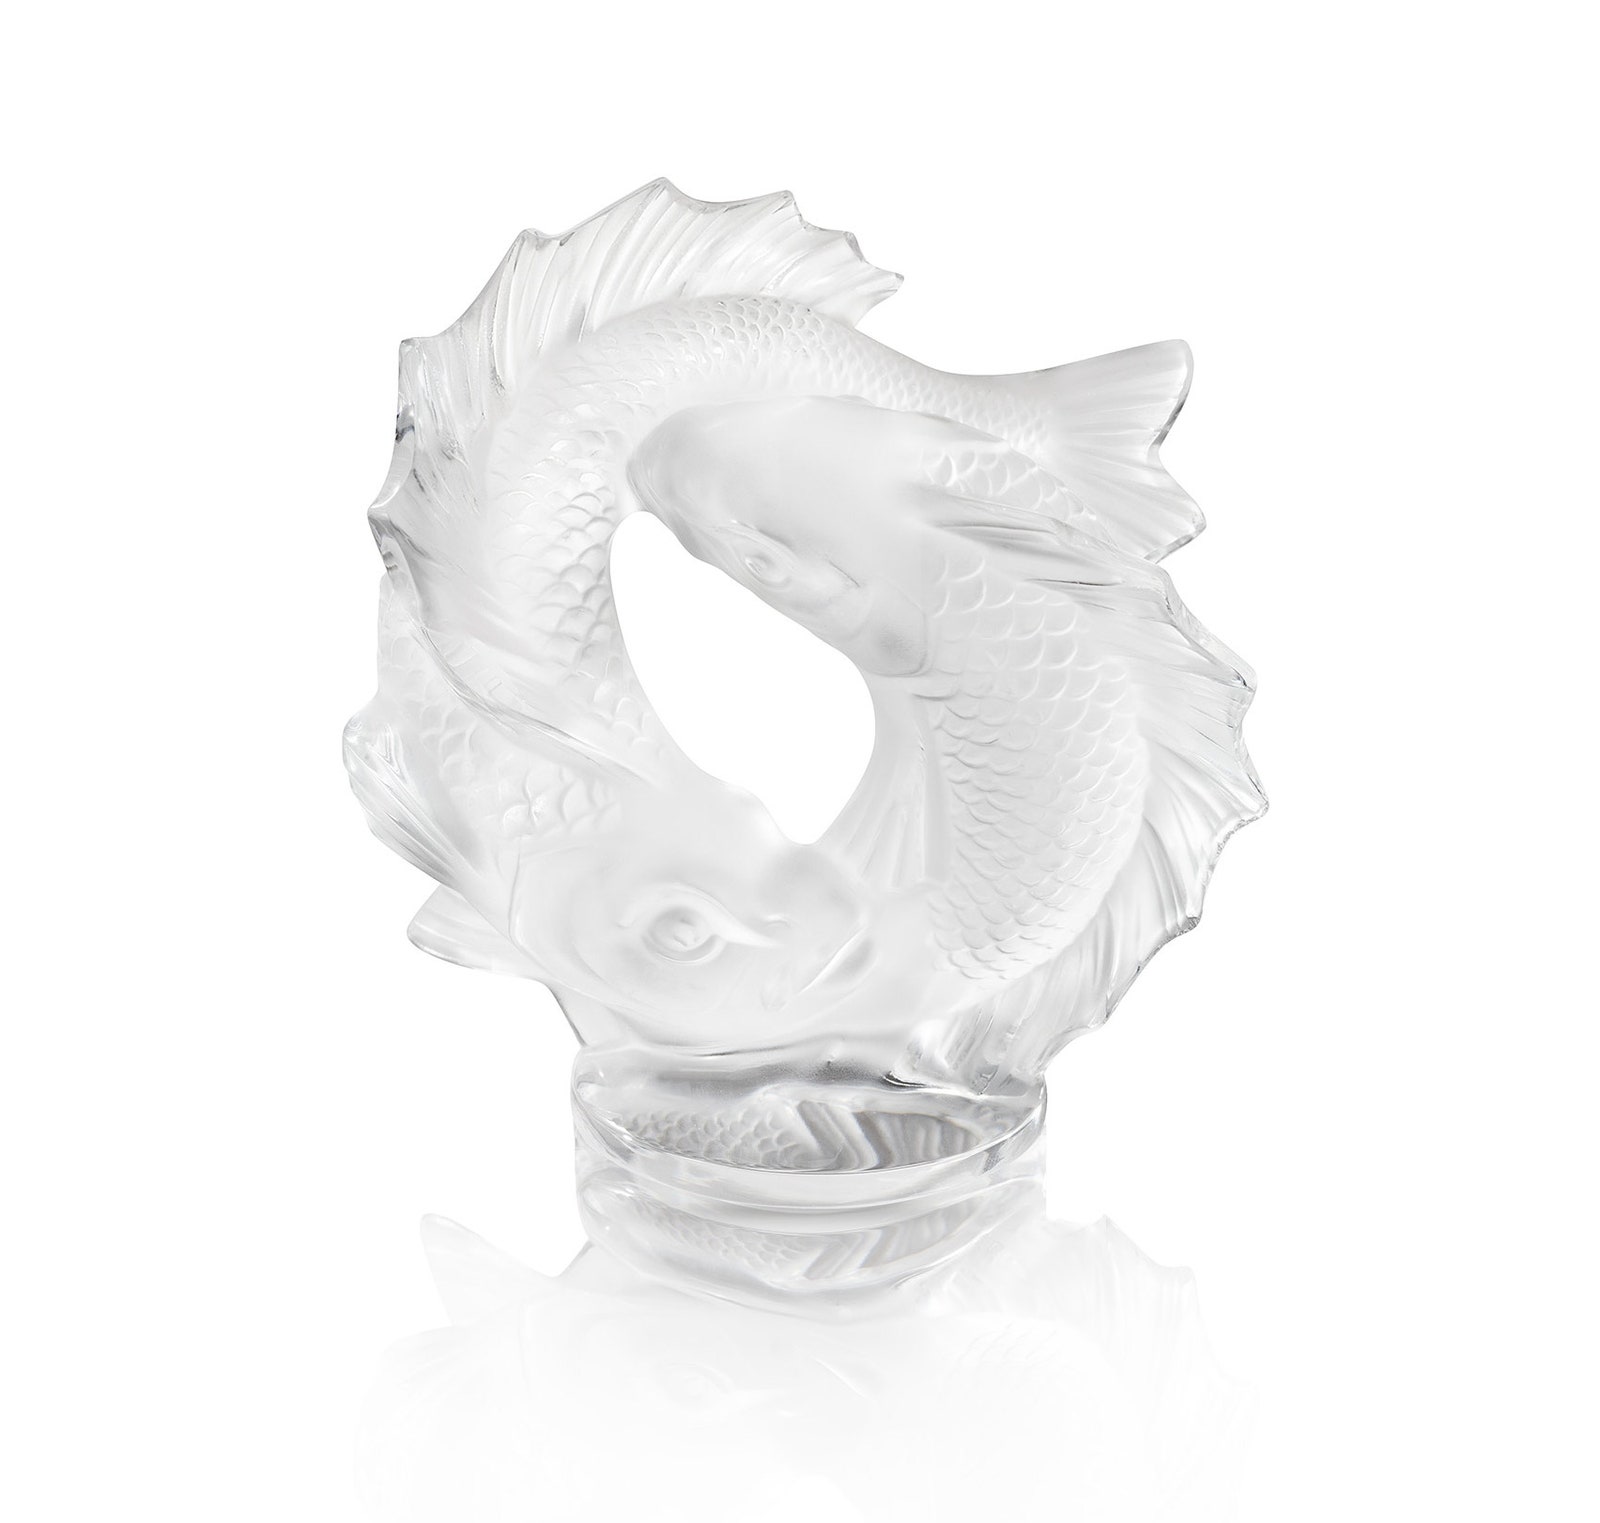 Новая морская коллекция ваз и скульптур Aquatique от дома Lalique